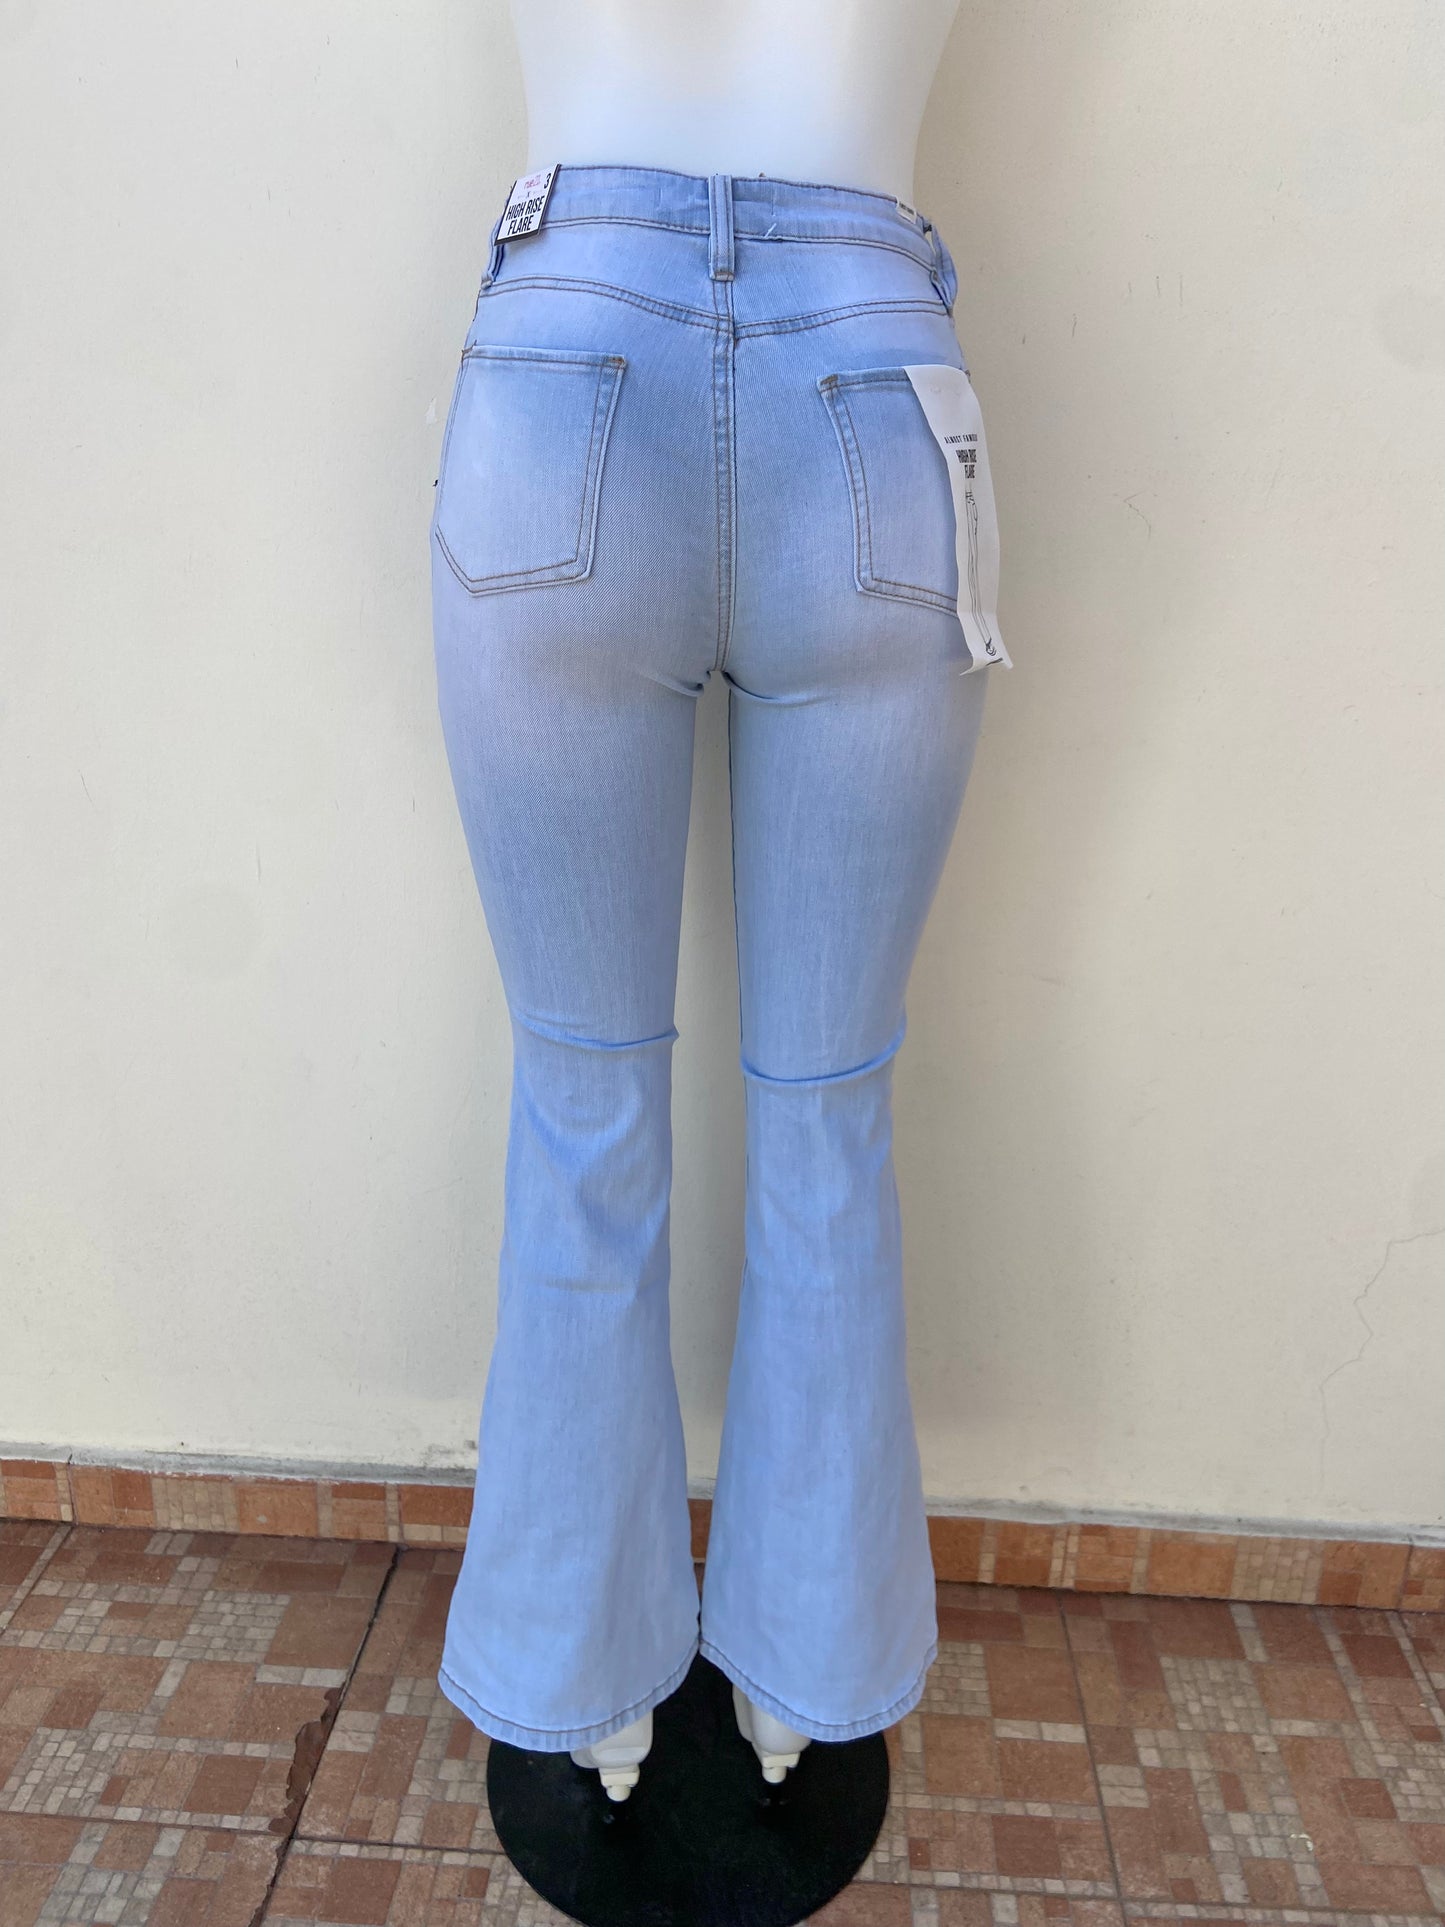 Pantalon jeans Rue21 original de color azul claro con rasgados estilo campana HIGH RISE FLARE